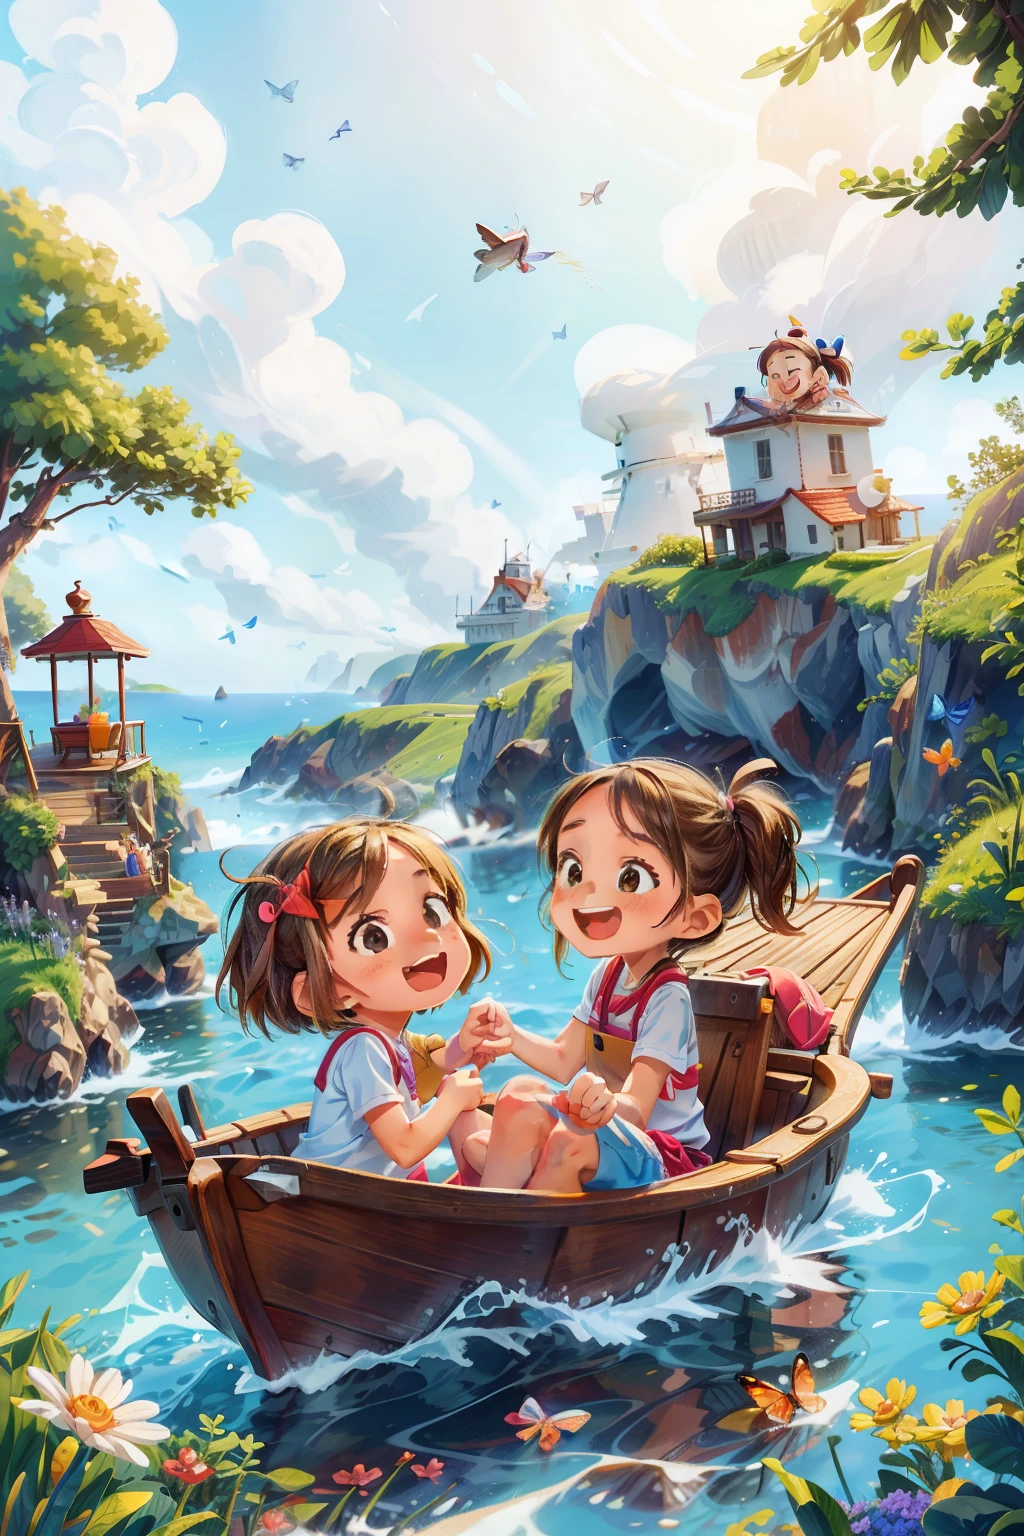 보트를 타고 항해하는 두 명의 행복한 아주 어린 소녀의 이미지를 생성합니다., 파도, 바다, 흰 구름이 있는 하늘. 화려한 나비, 백그라운드에서 등대,